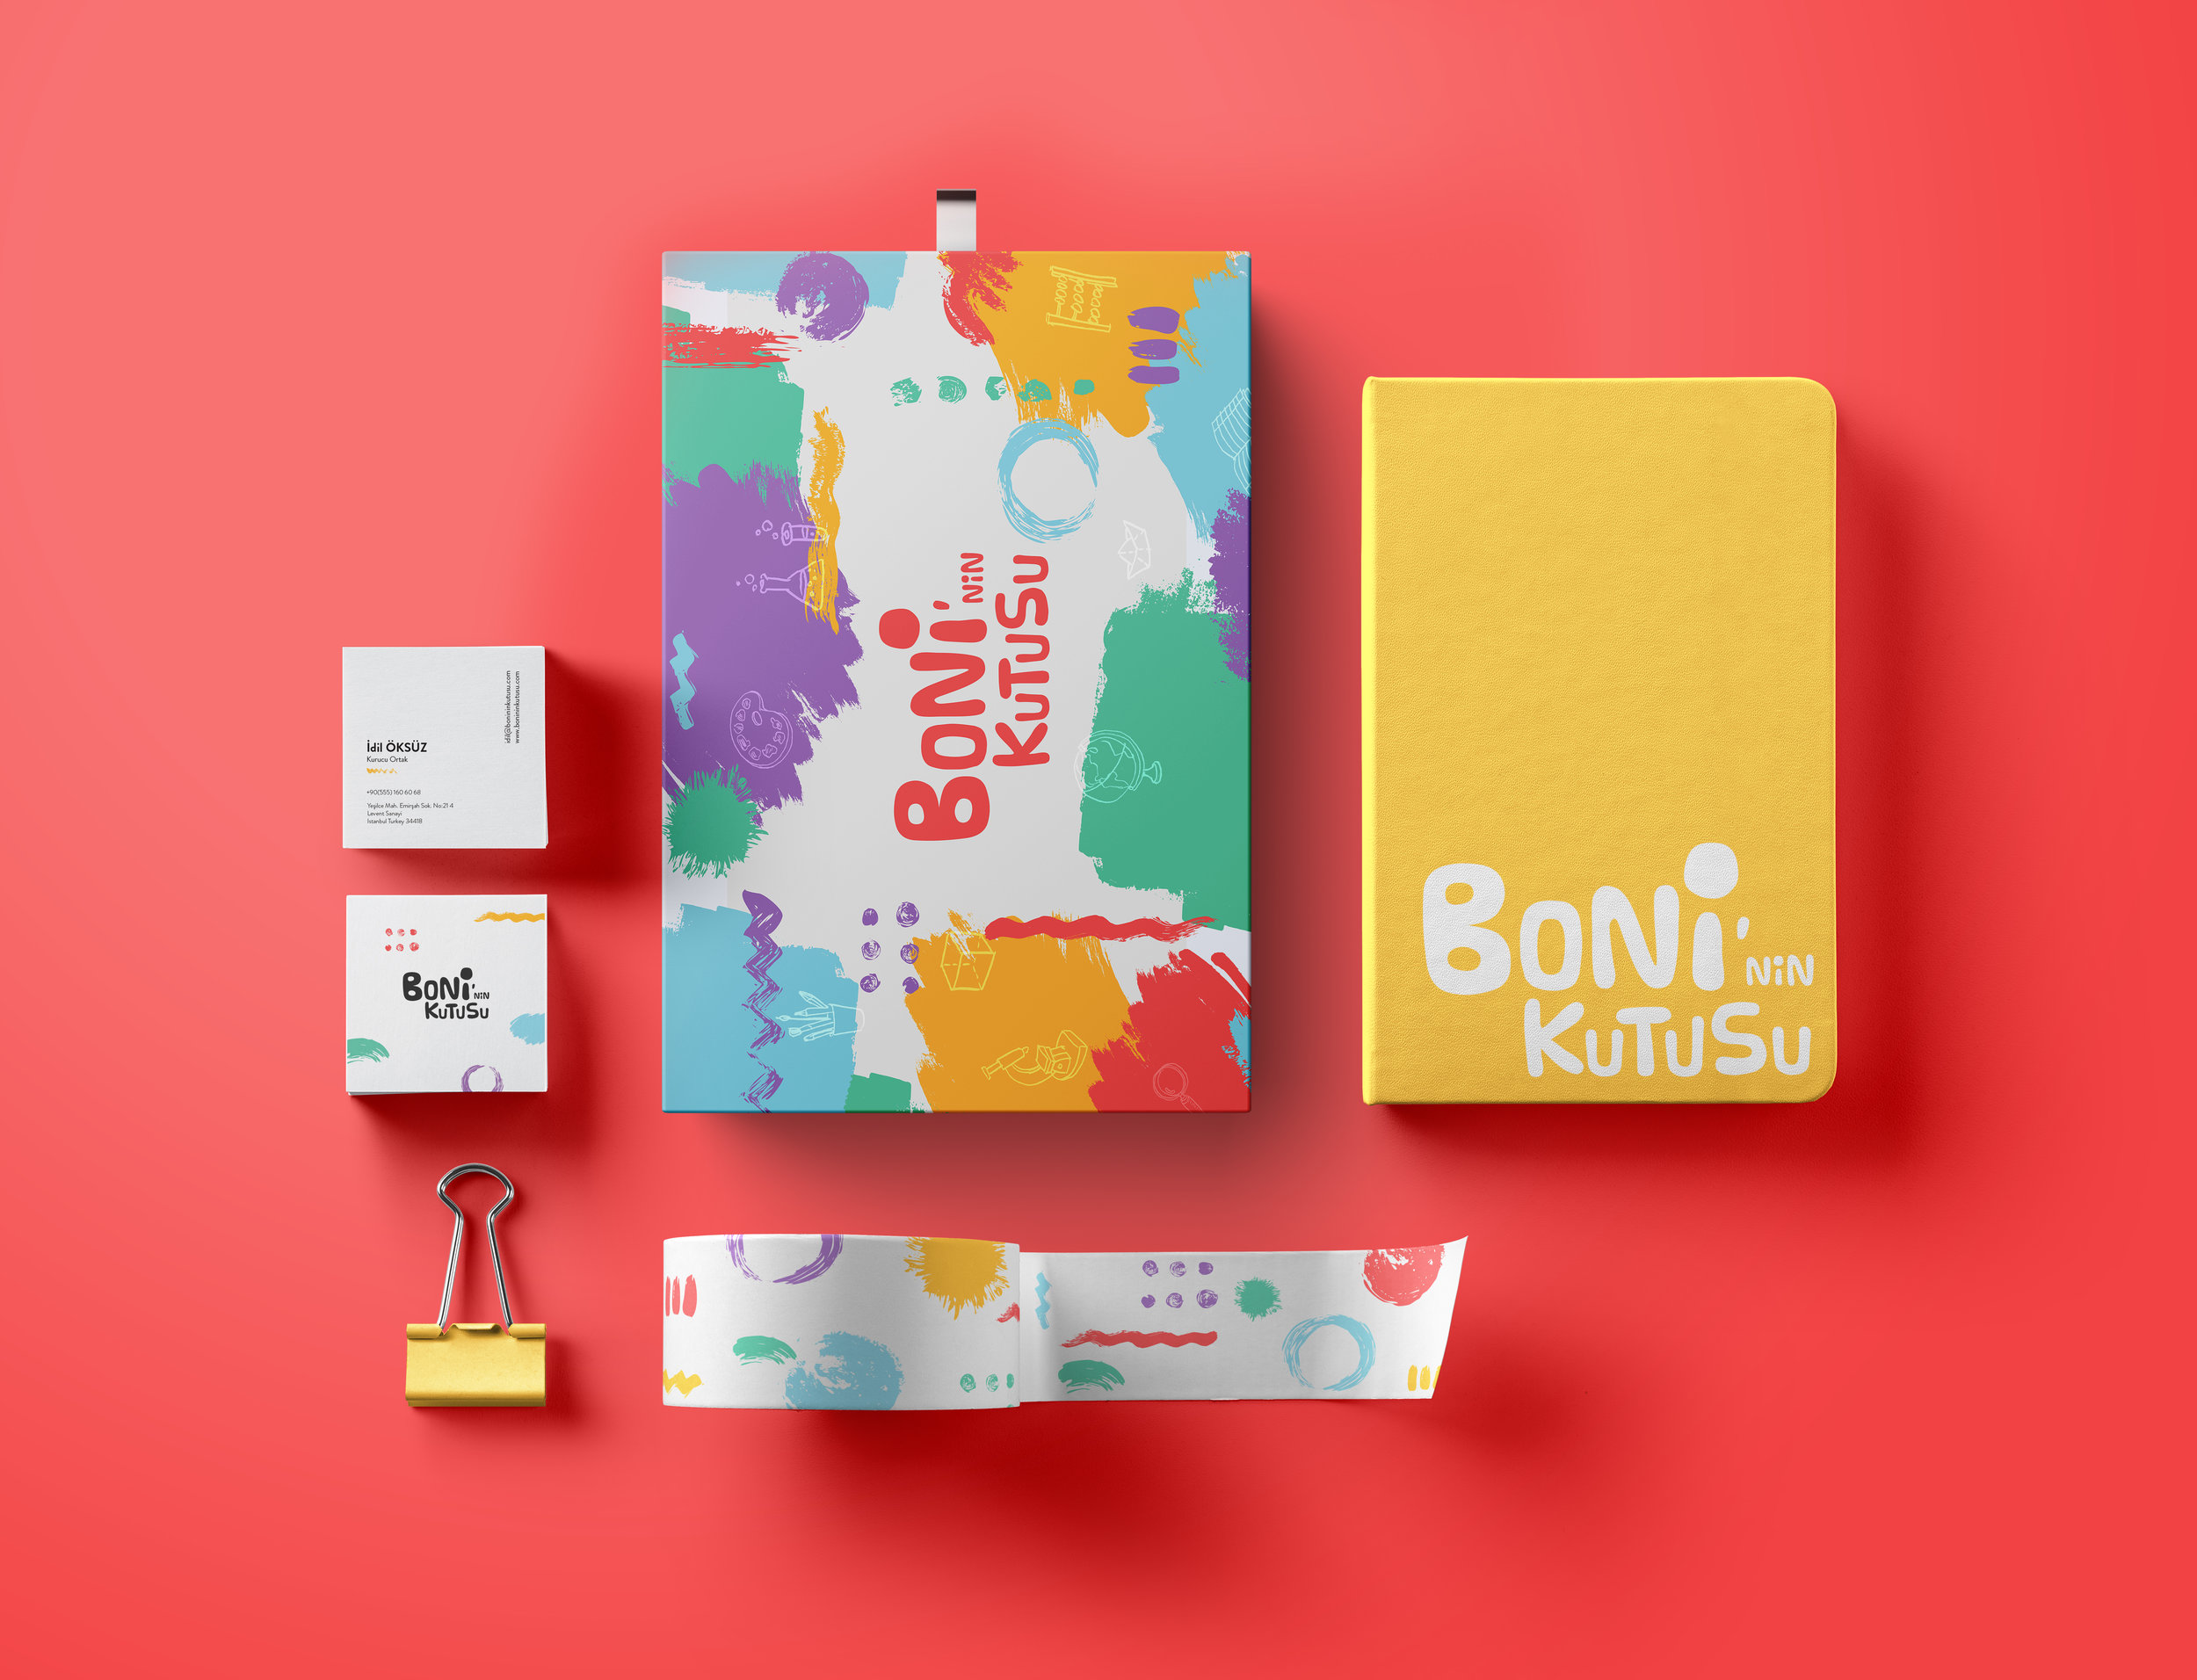 Brand Identity for Boni’nin Kutusu Activity Box